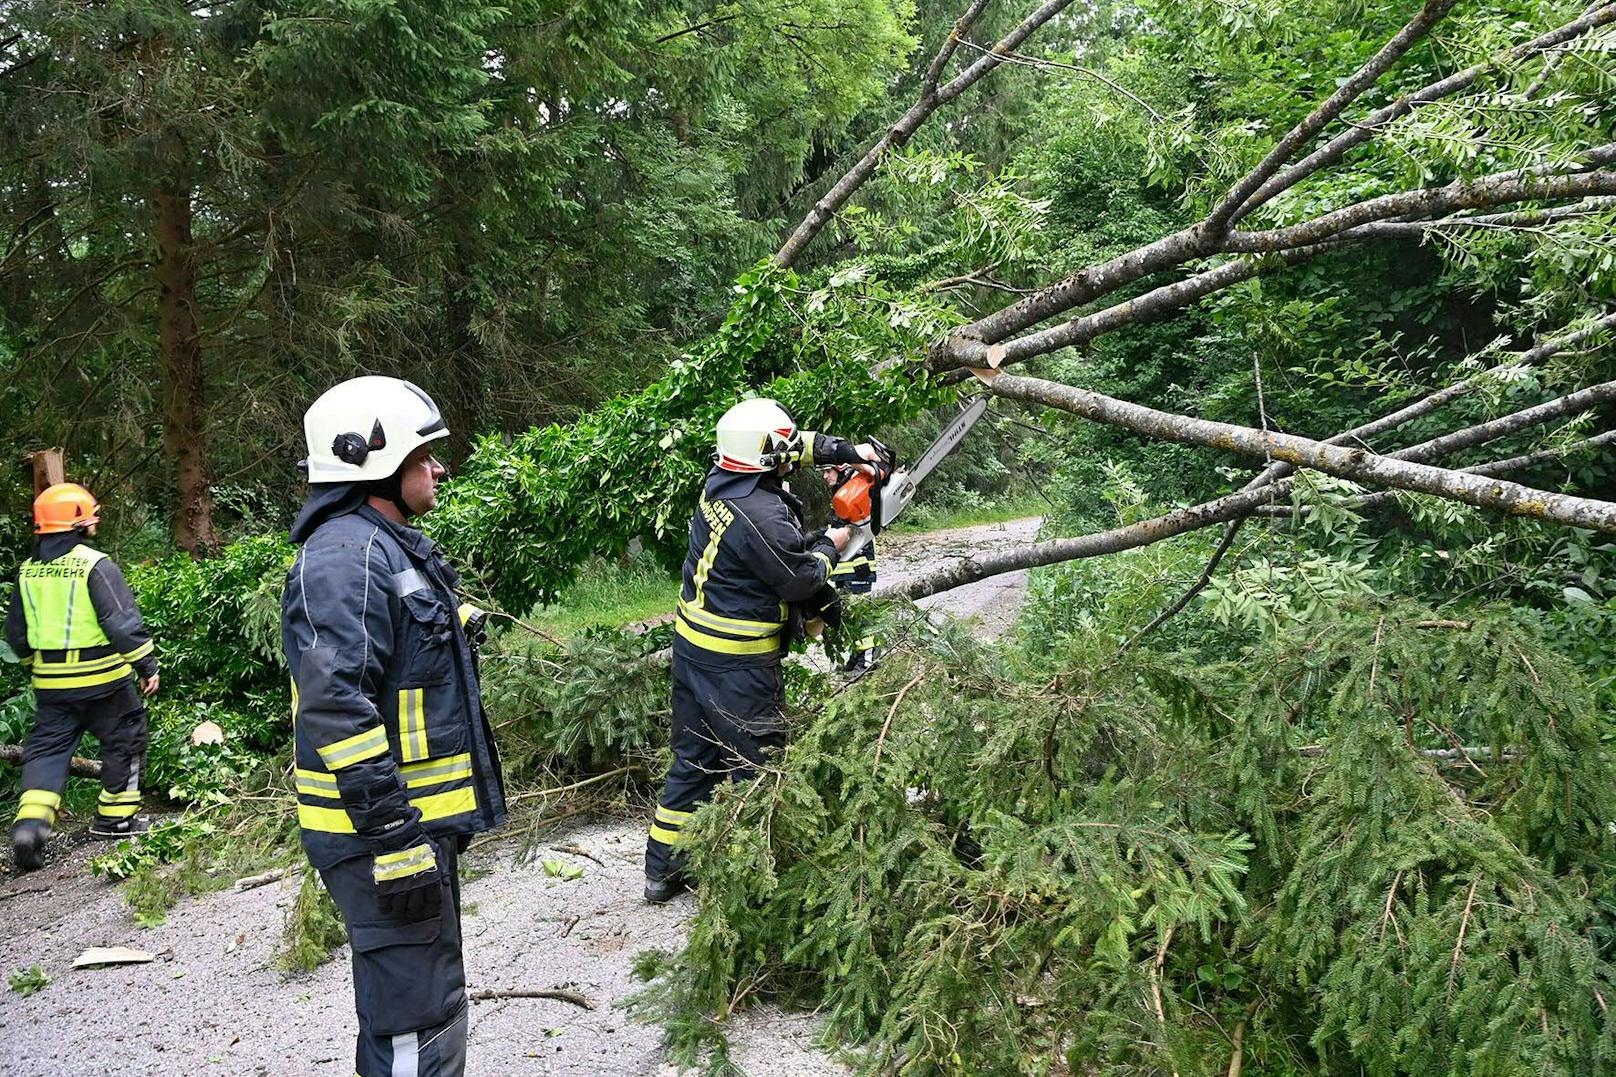 Einsatzkräfte der Feuerwehr am Dienstag, 29. Juni 2021, bei Aufräumungsarbeiten nach Unwetterschäden im Stadtgebiet von Mattighofen.